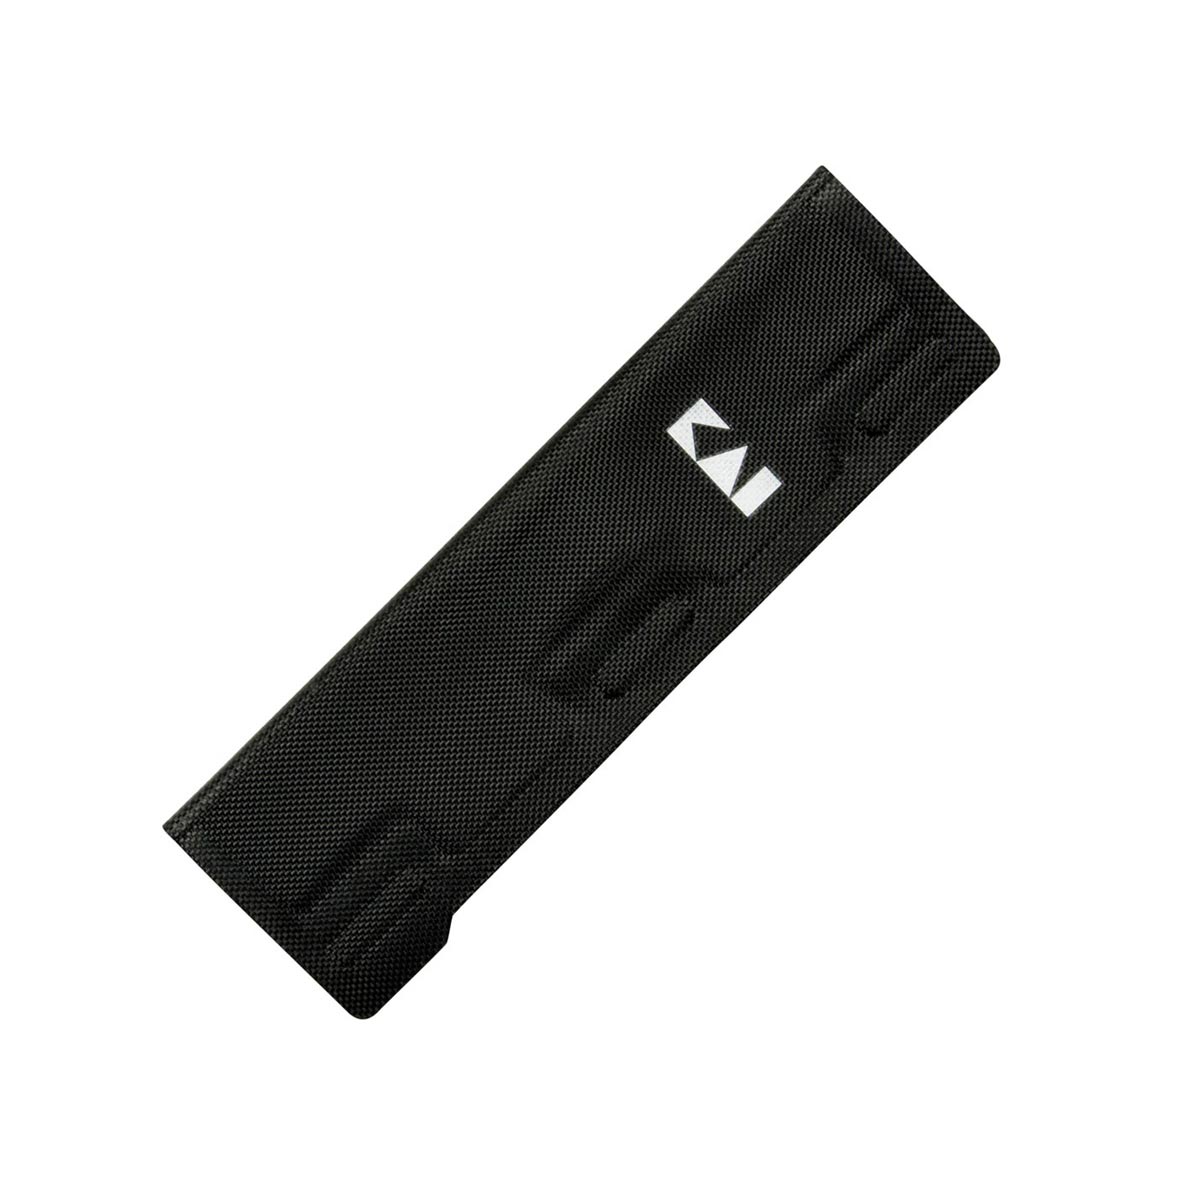 KAI Klingenschutz S für Messerklingen bis 18 cm / Polyester-Gewebe mit Magneten